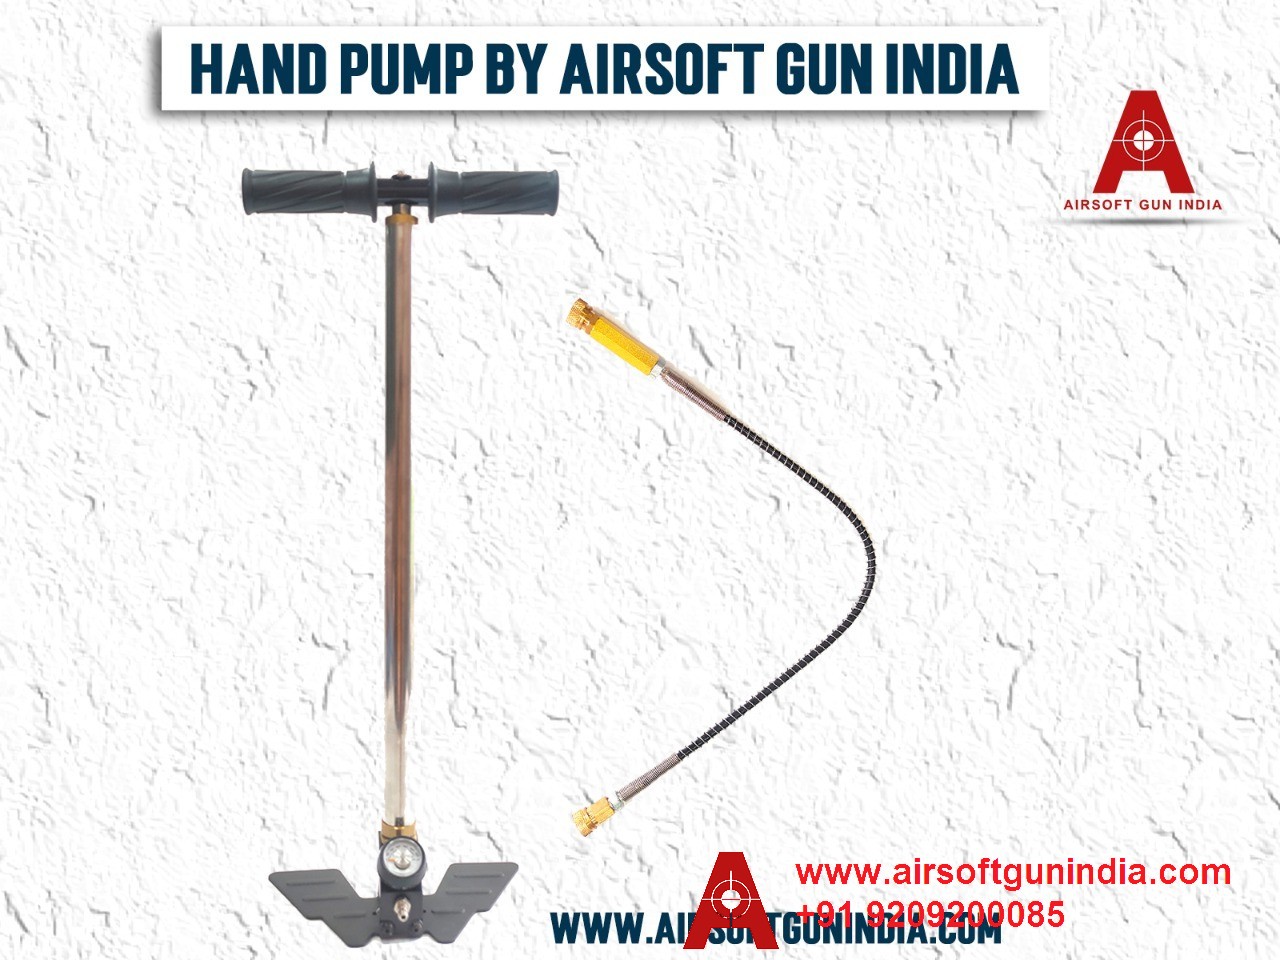 Hand Pumps For PCP Air Rifles By Airsoft Gun India.